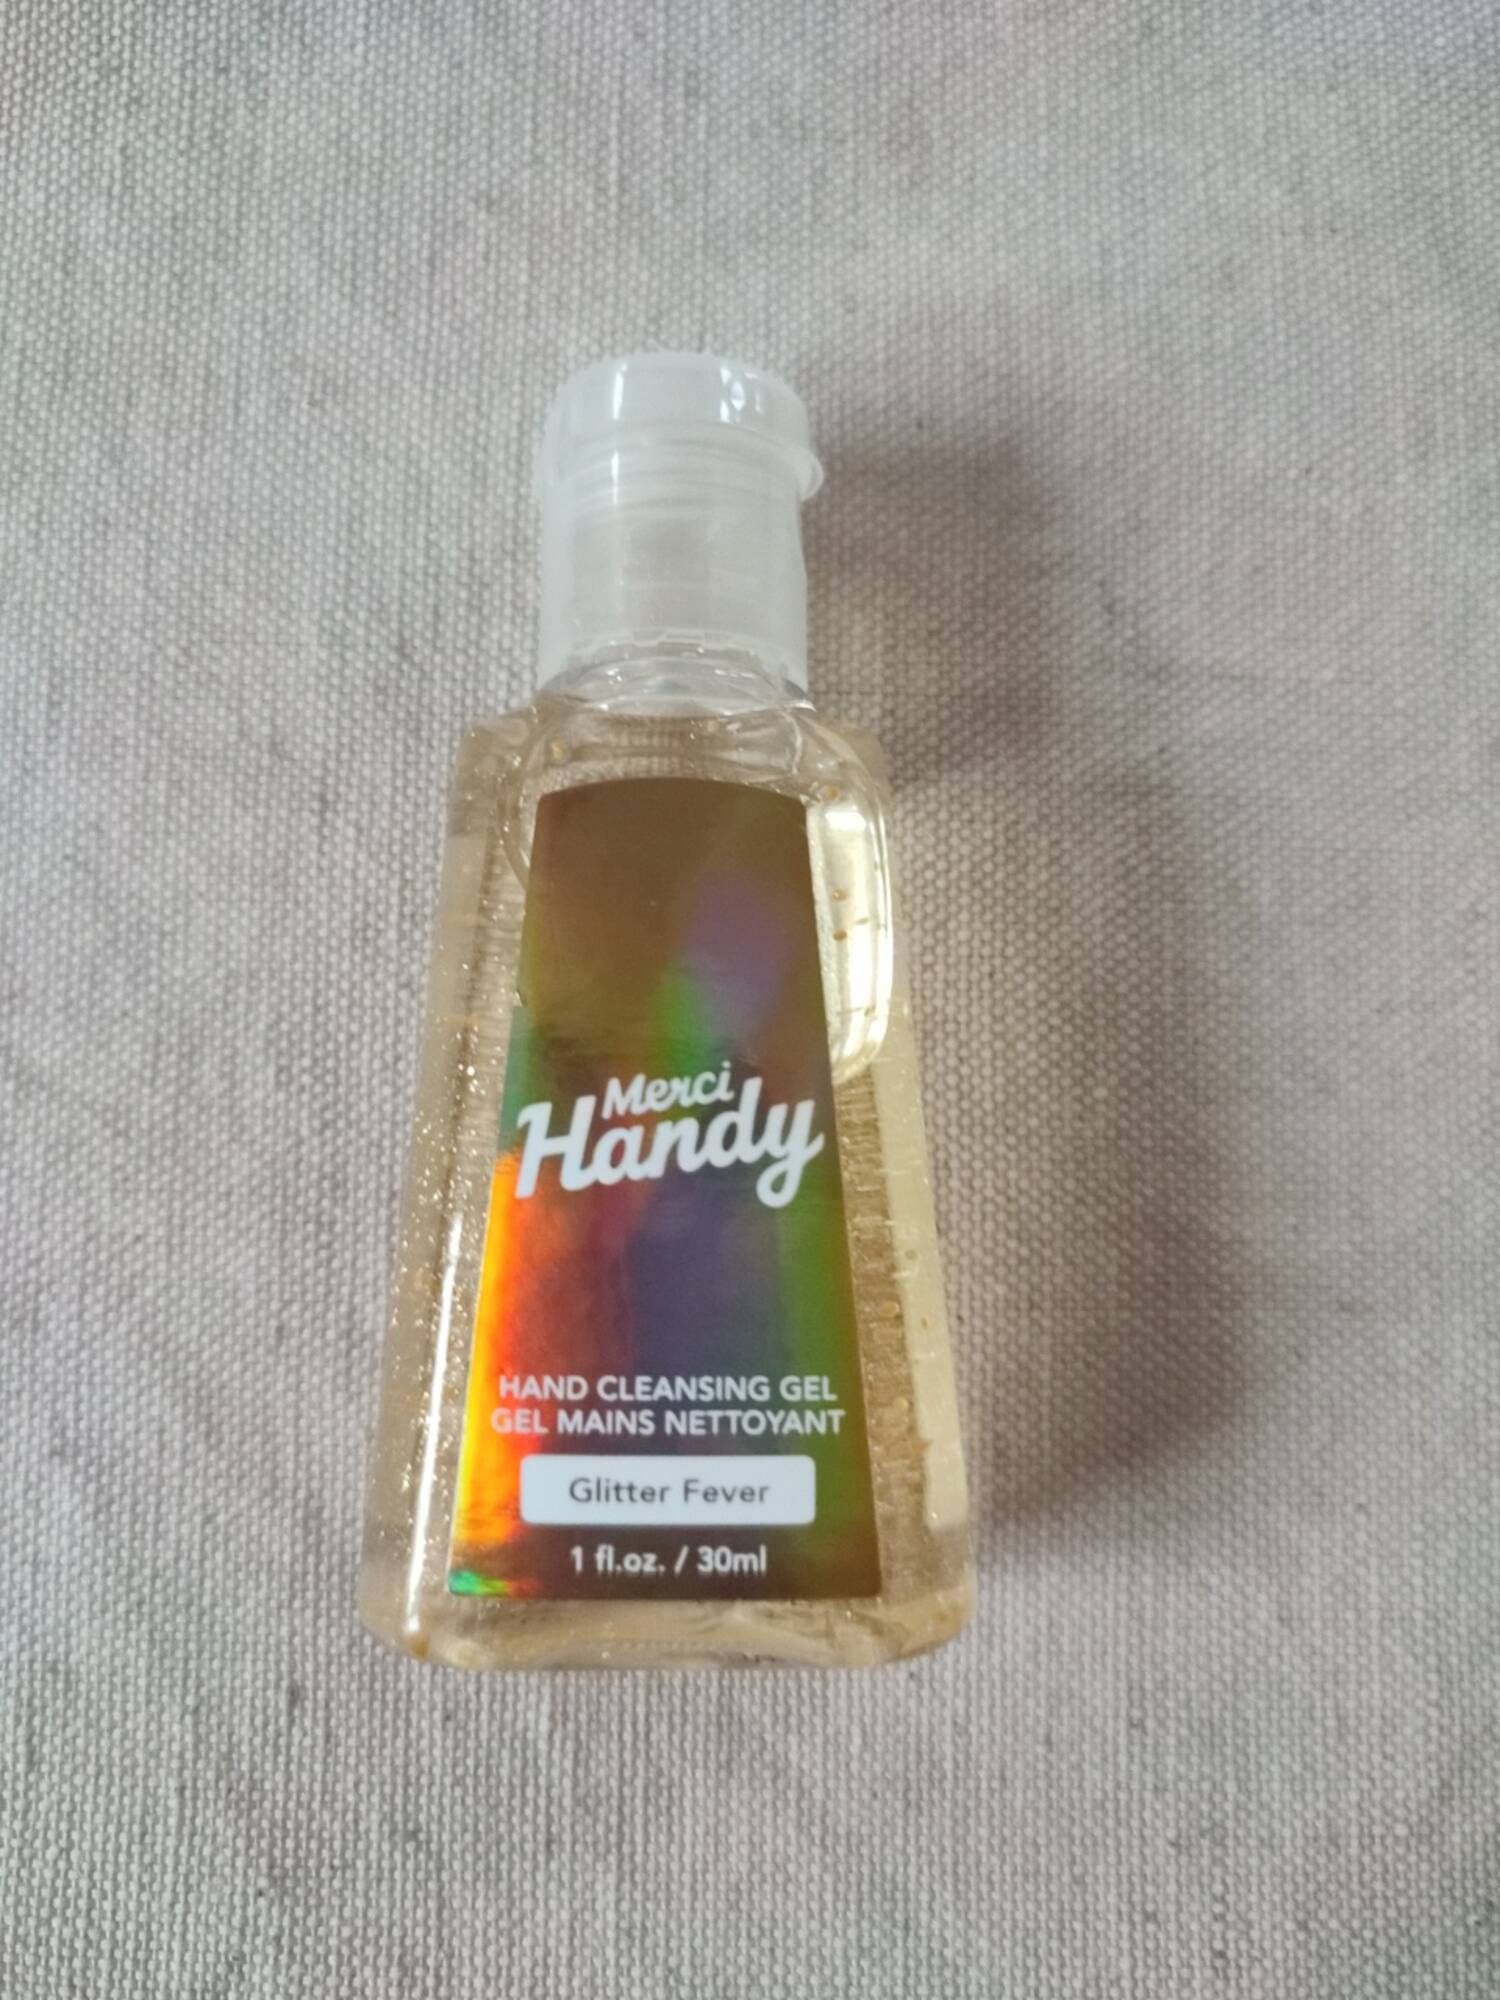 MERCI HANDY - Glitter fever - Gel mains nettoyant 